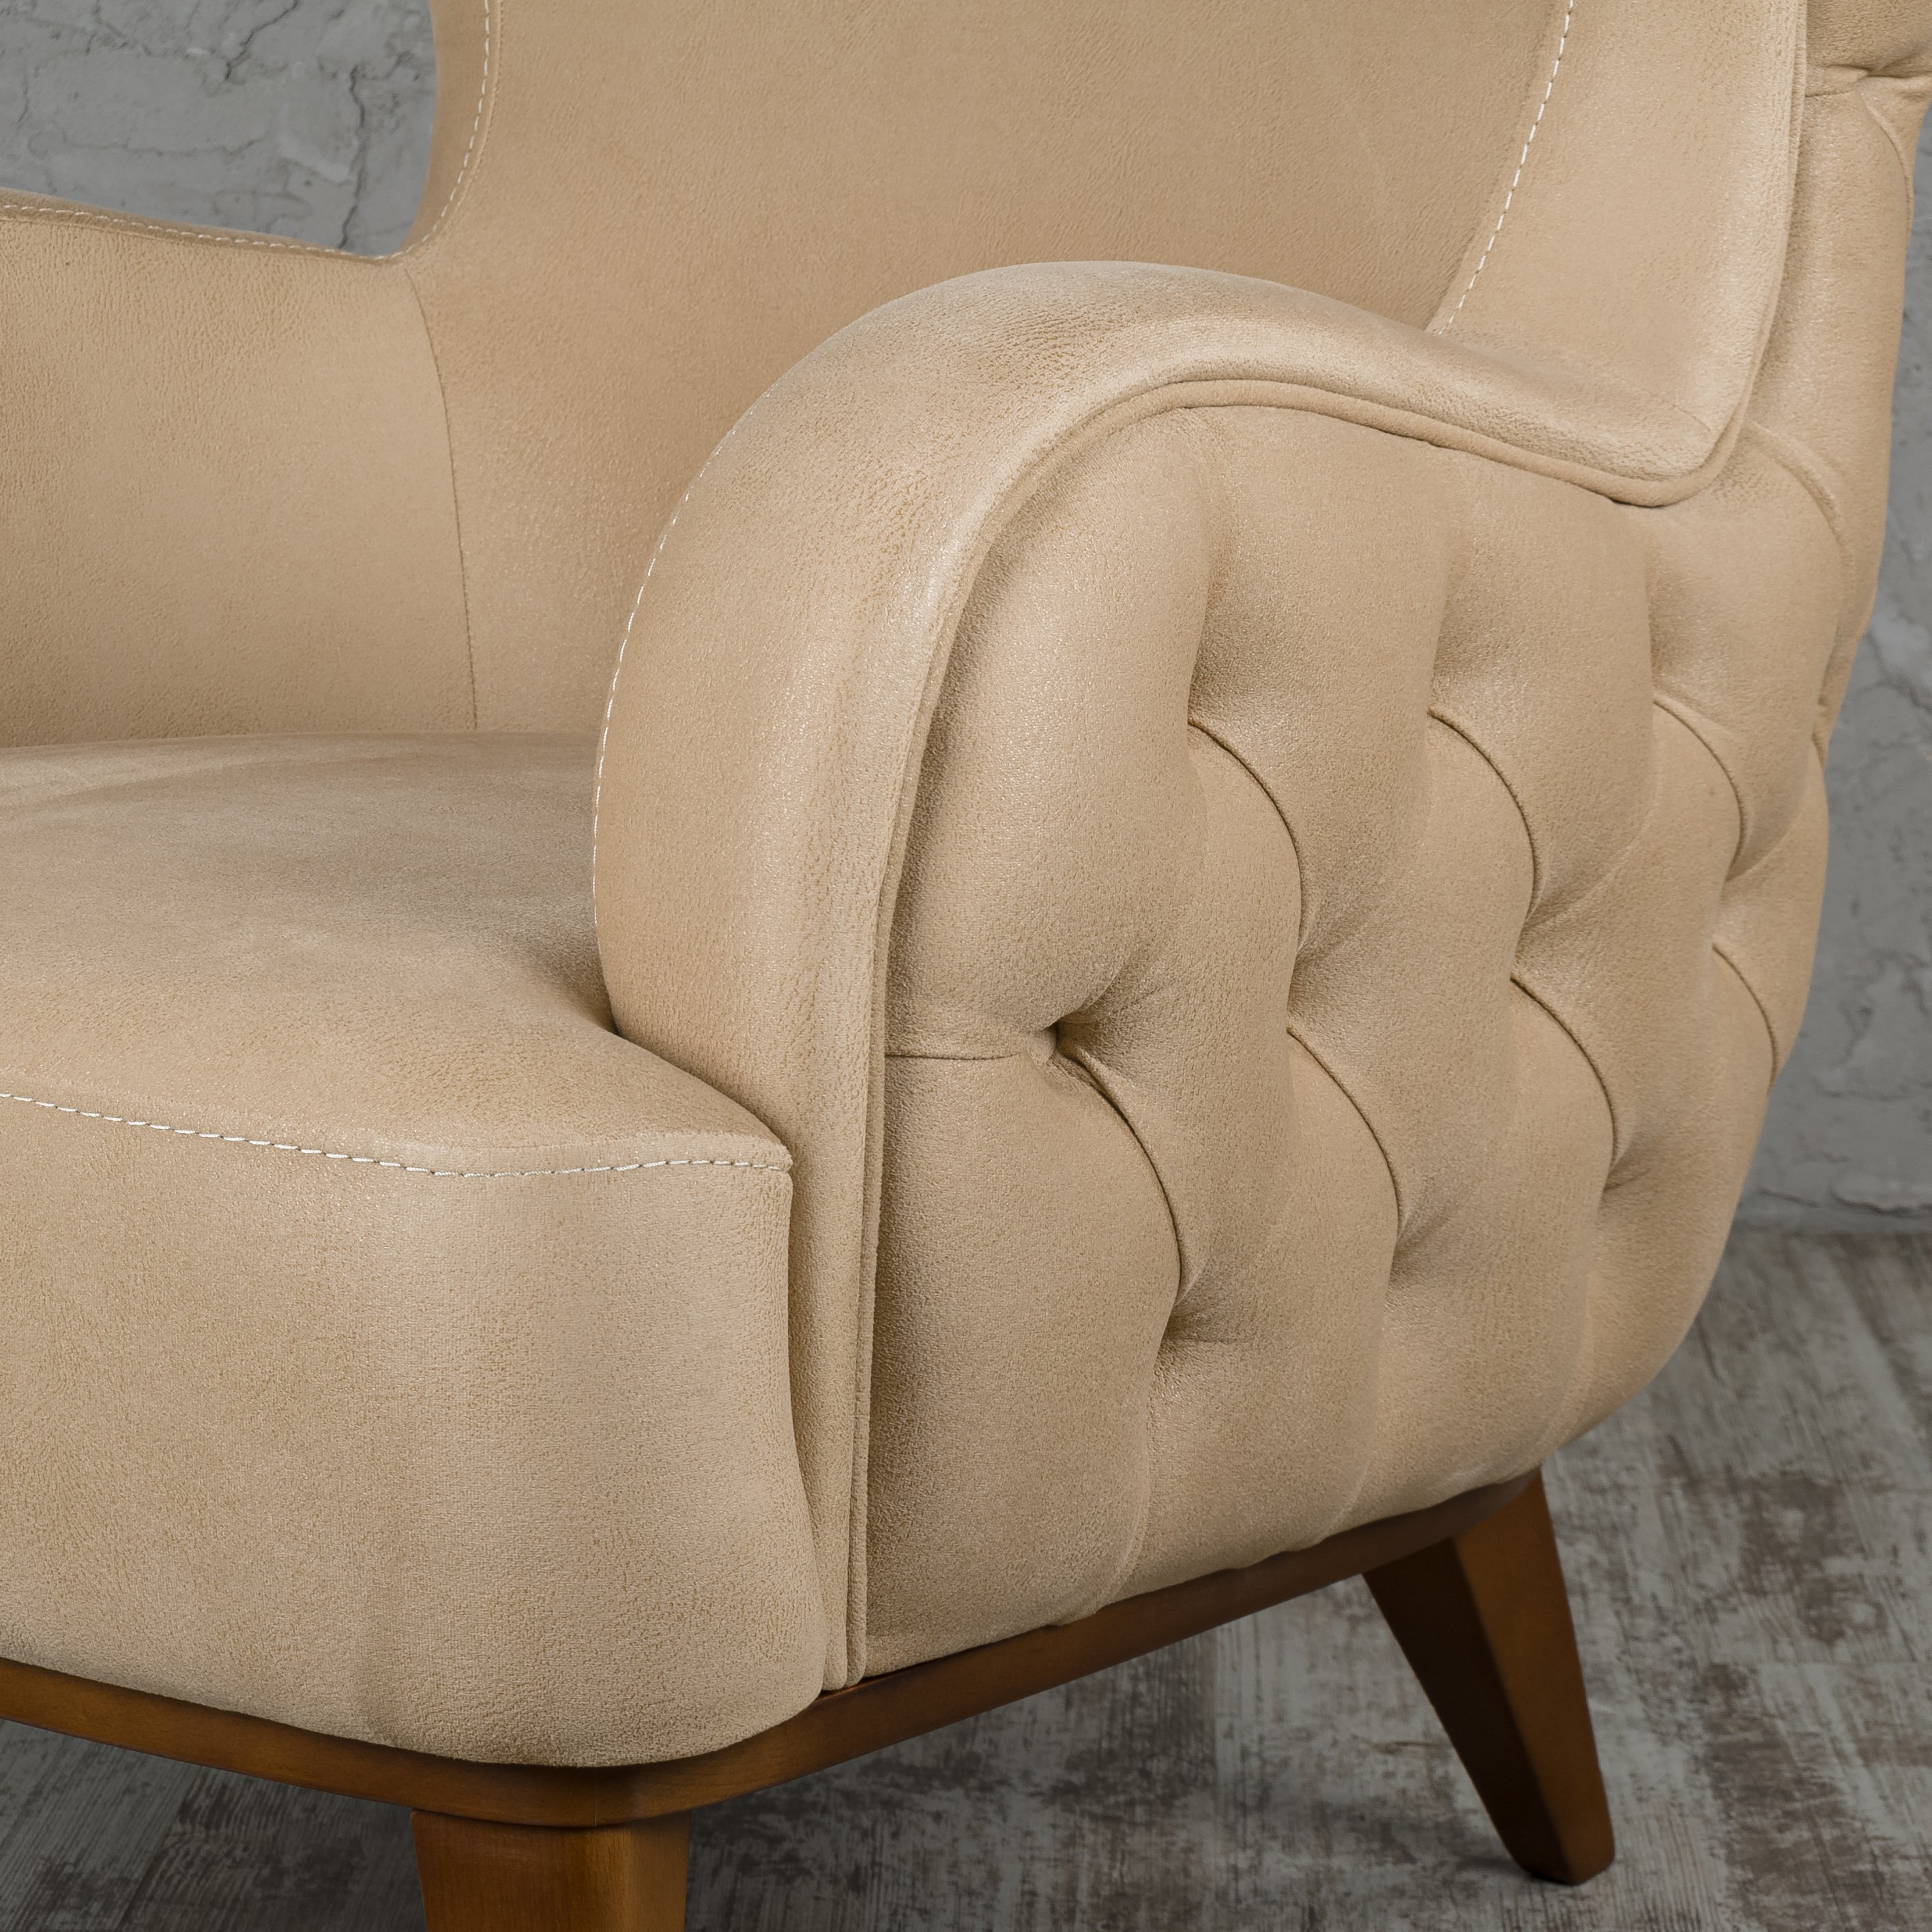 Кресло Lenova Mable, размер 80х75х90, ткань Zegna 13/beige (02197)02197